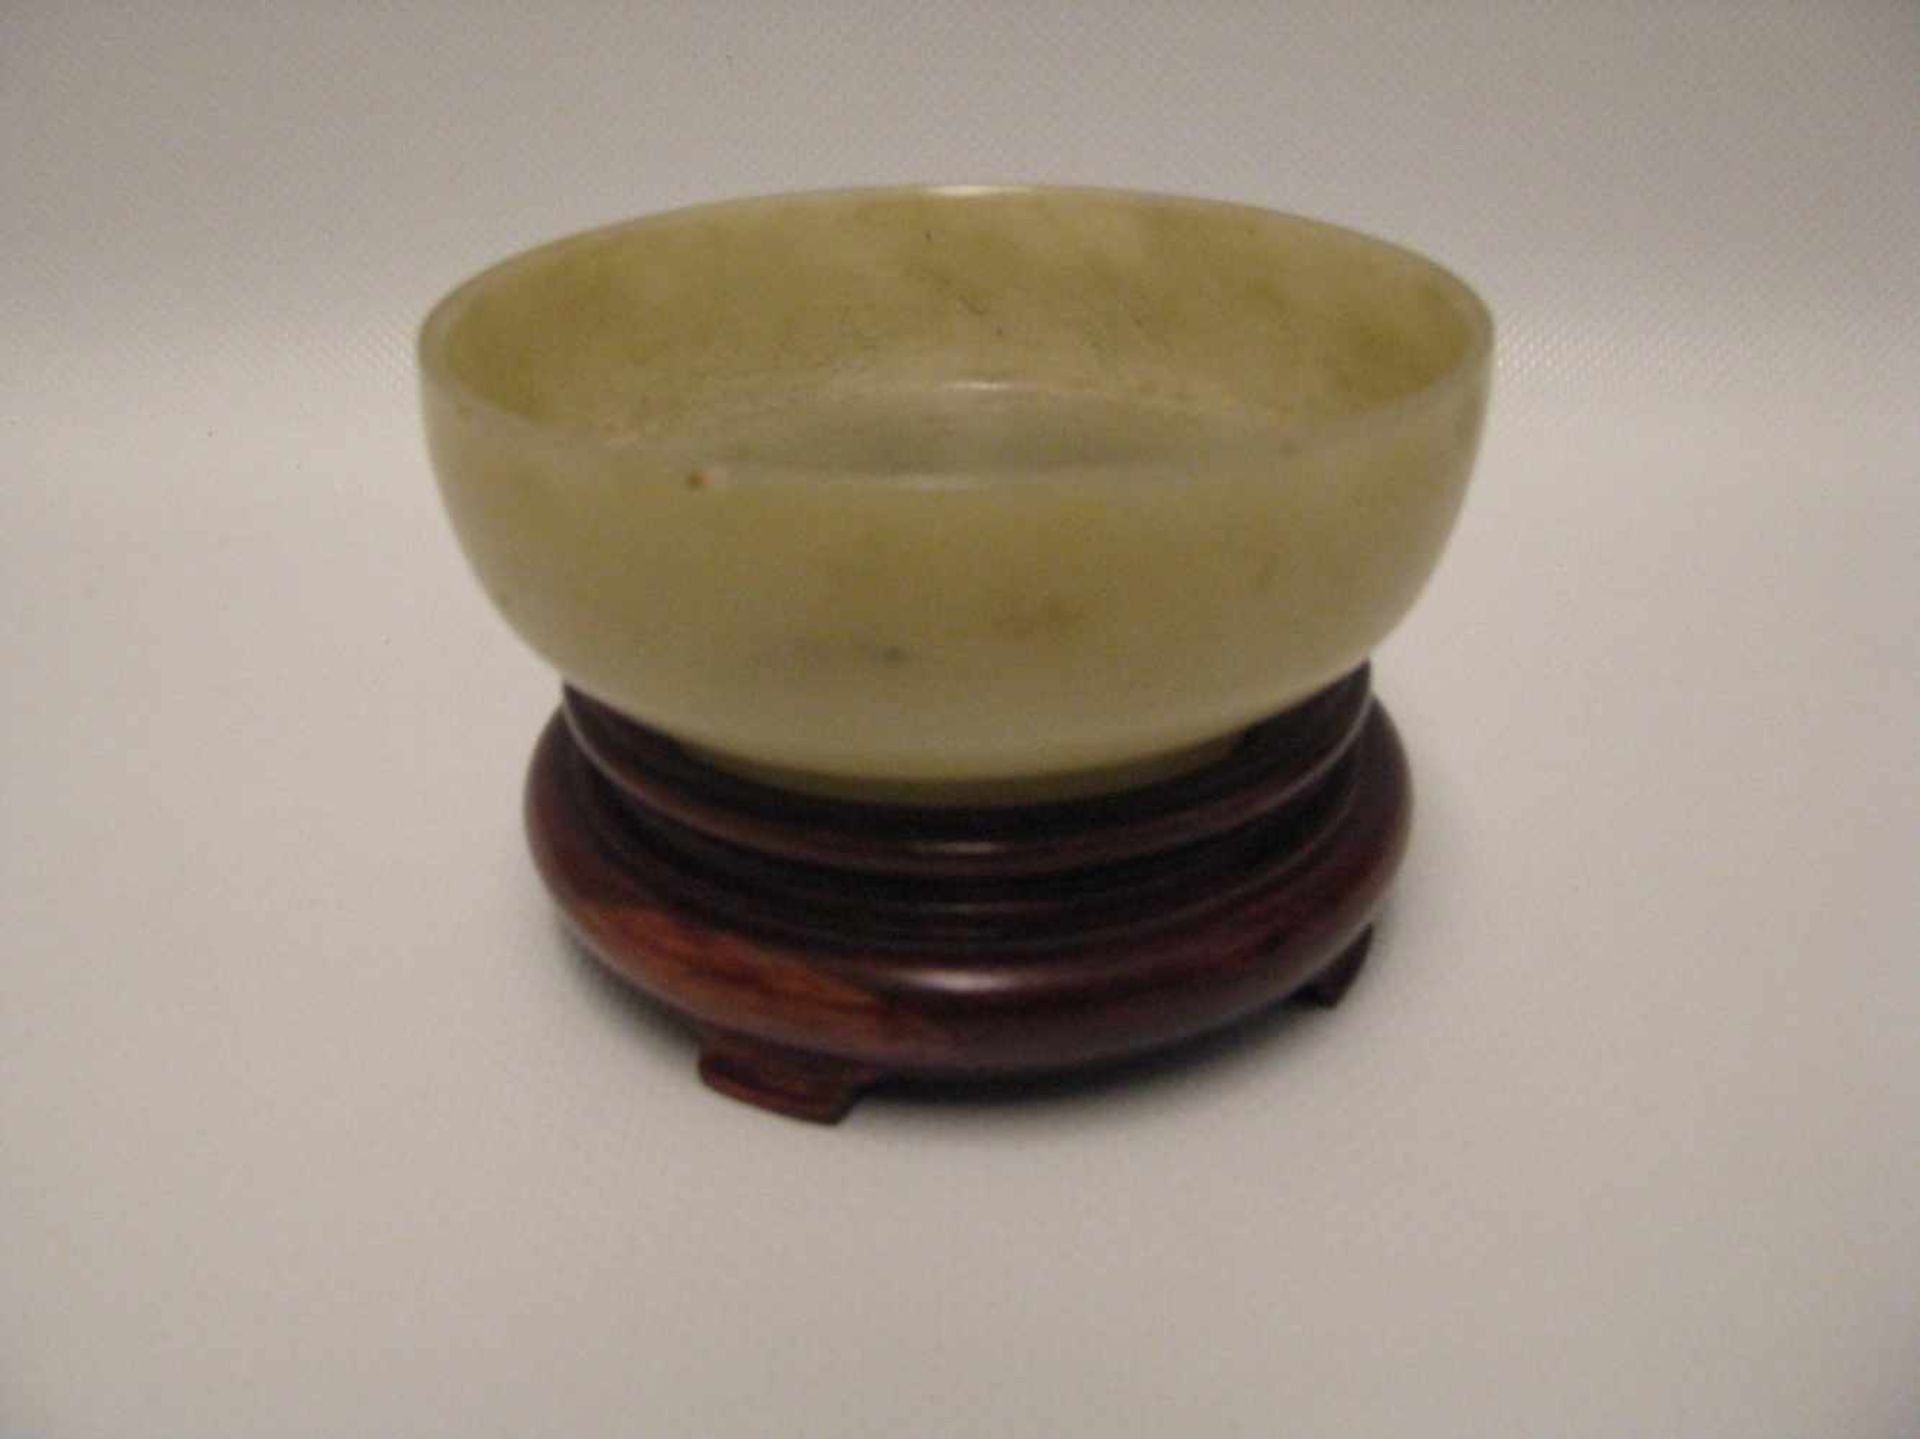 Jade-Schale, China, um 1900, milchfarben-bräunliche Jade, Holzsockel, h 4 cm, d 9,5 cm.- - -19.